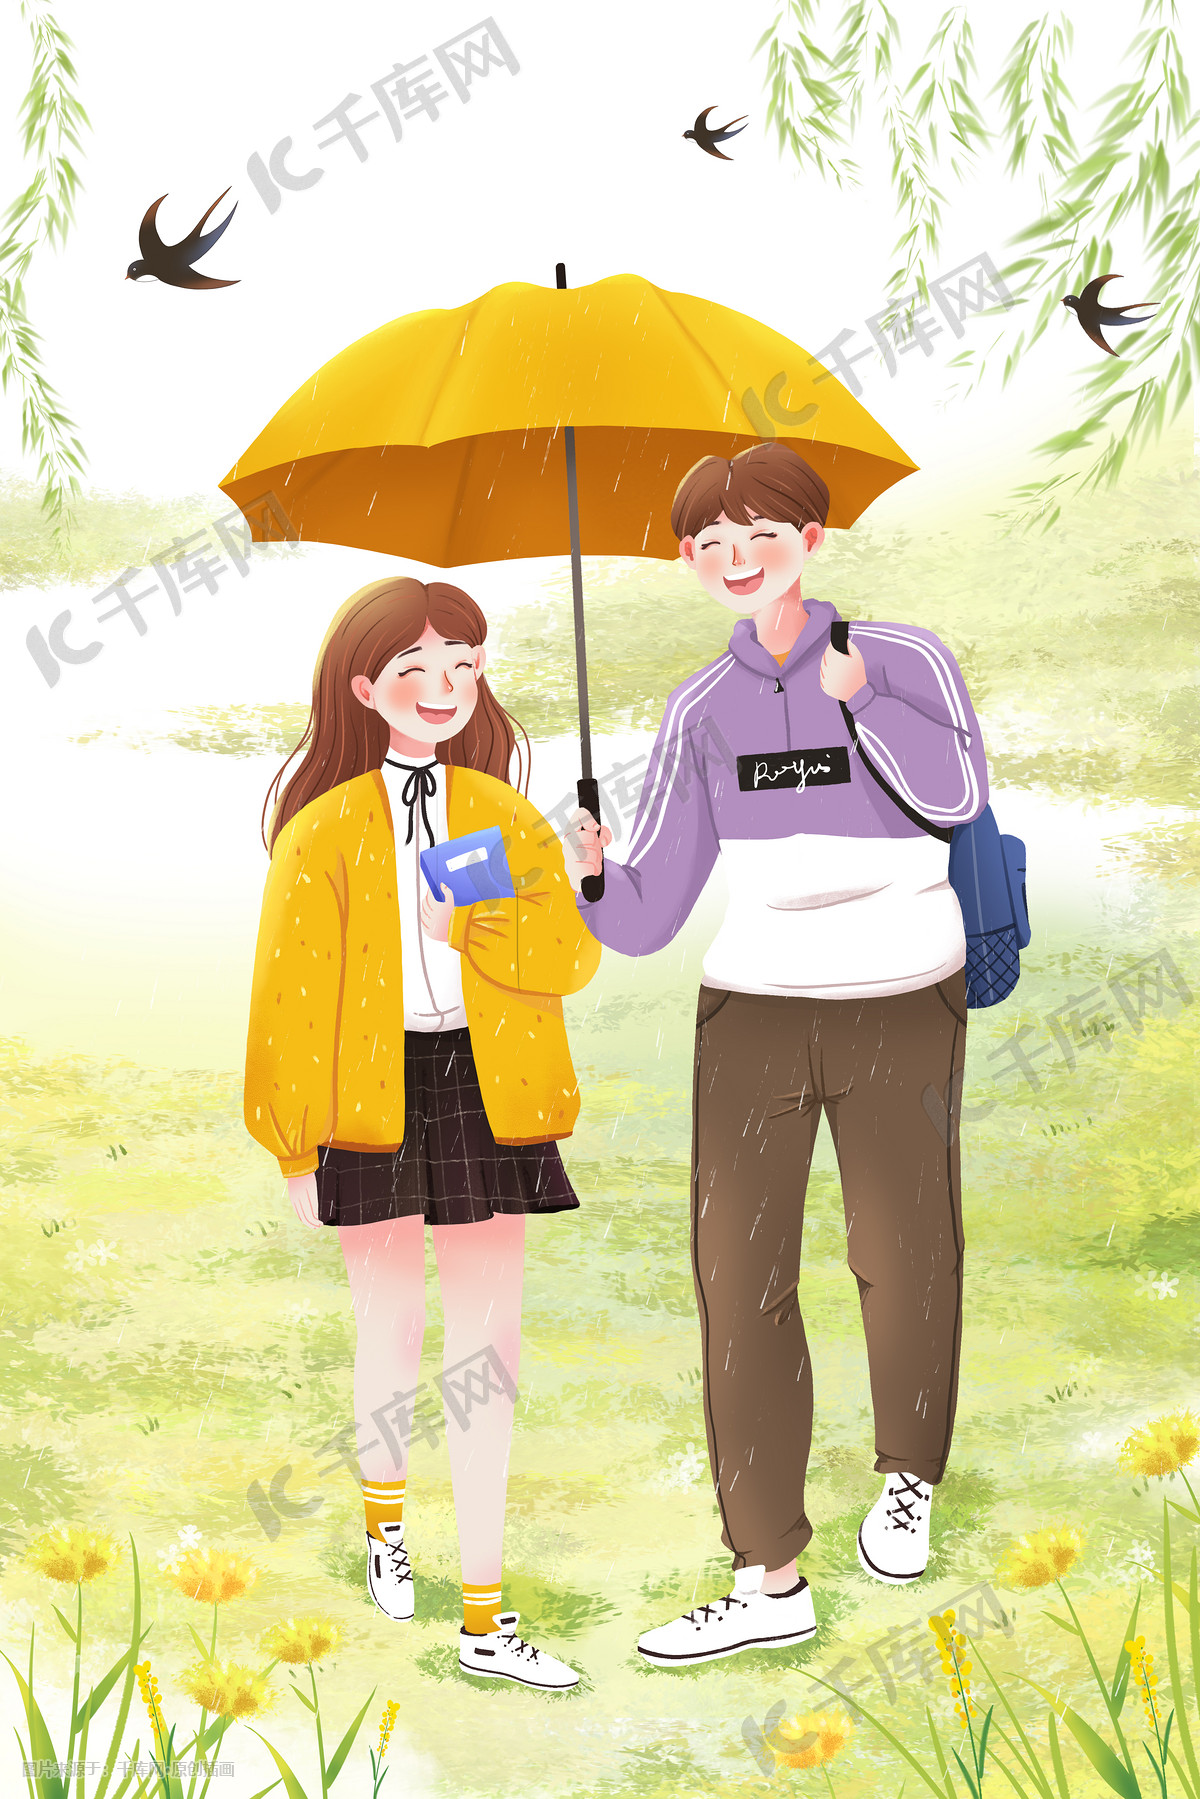 年轻情侣打着雨伞散步-蓝牛仔影像-中国原创广告影像素材